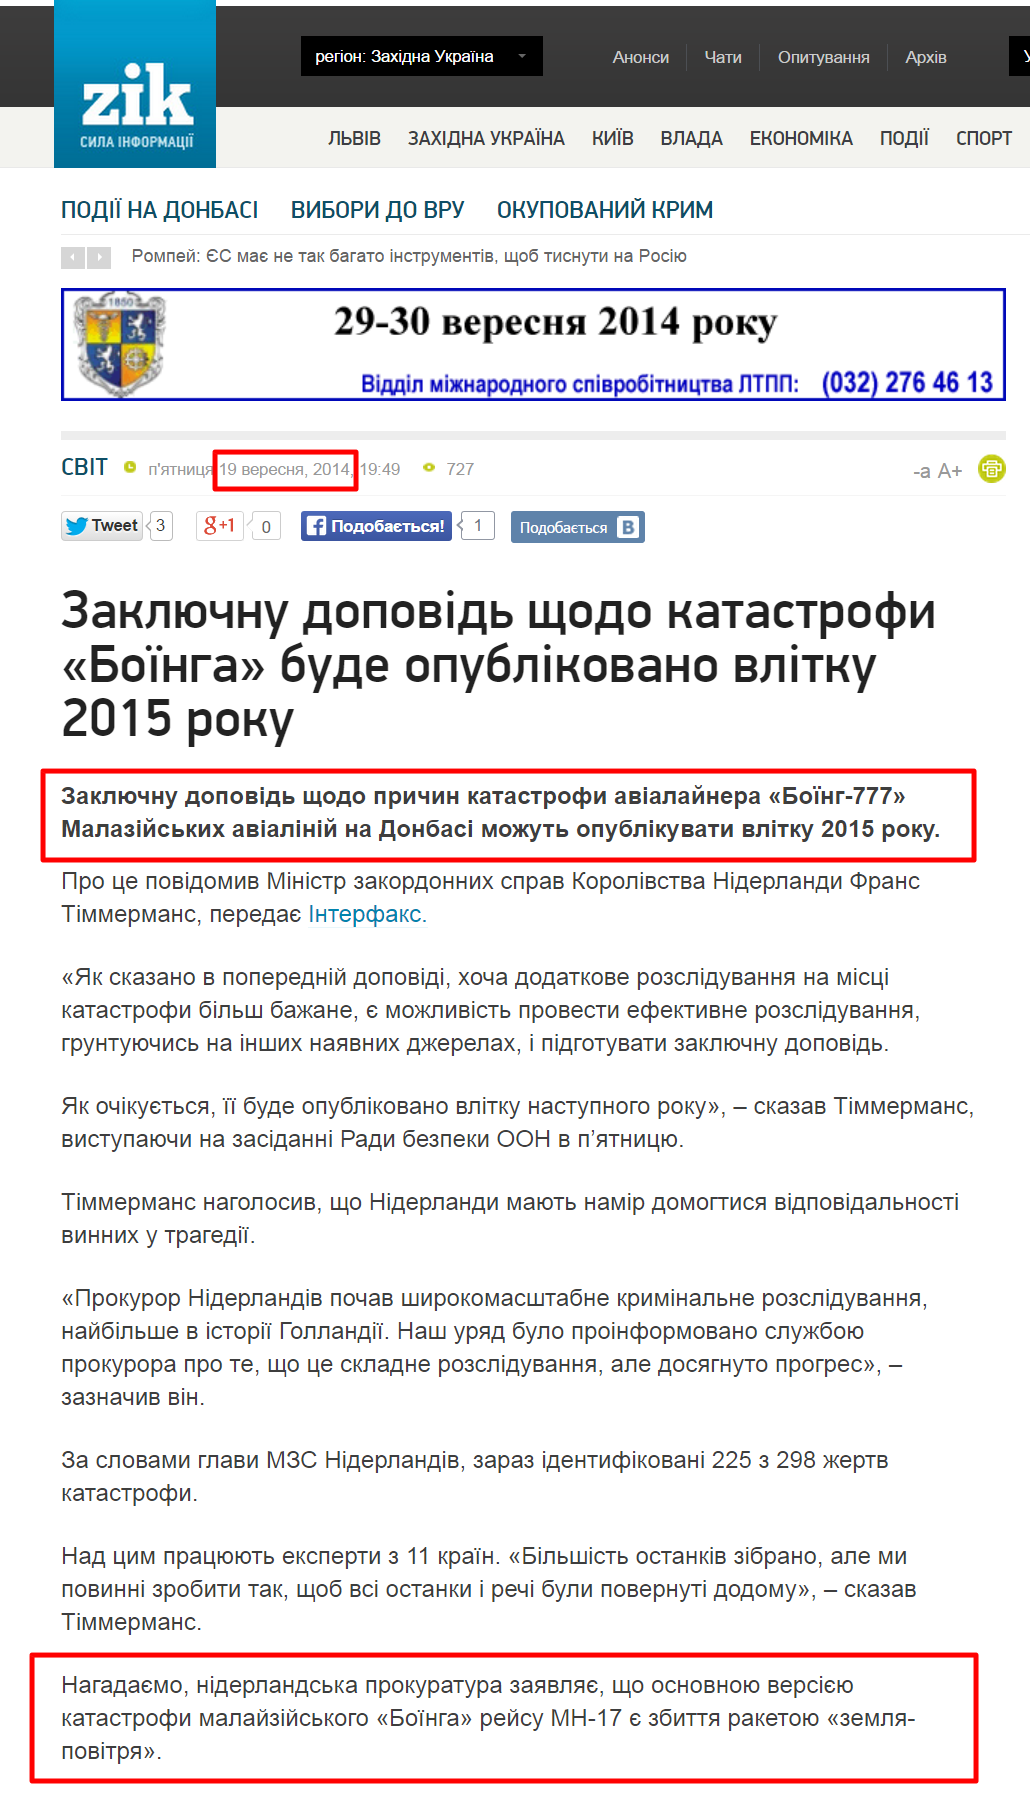 http://zik.ua/ua/news/2014/09/19/zaklyuchnu_dopovid_shchodo_katastrofy_boinga_bude_opublikovano_vlitku_2015_roku_525138